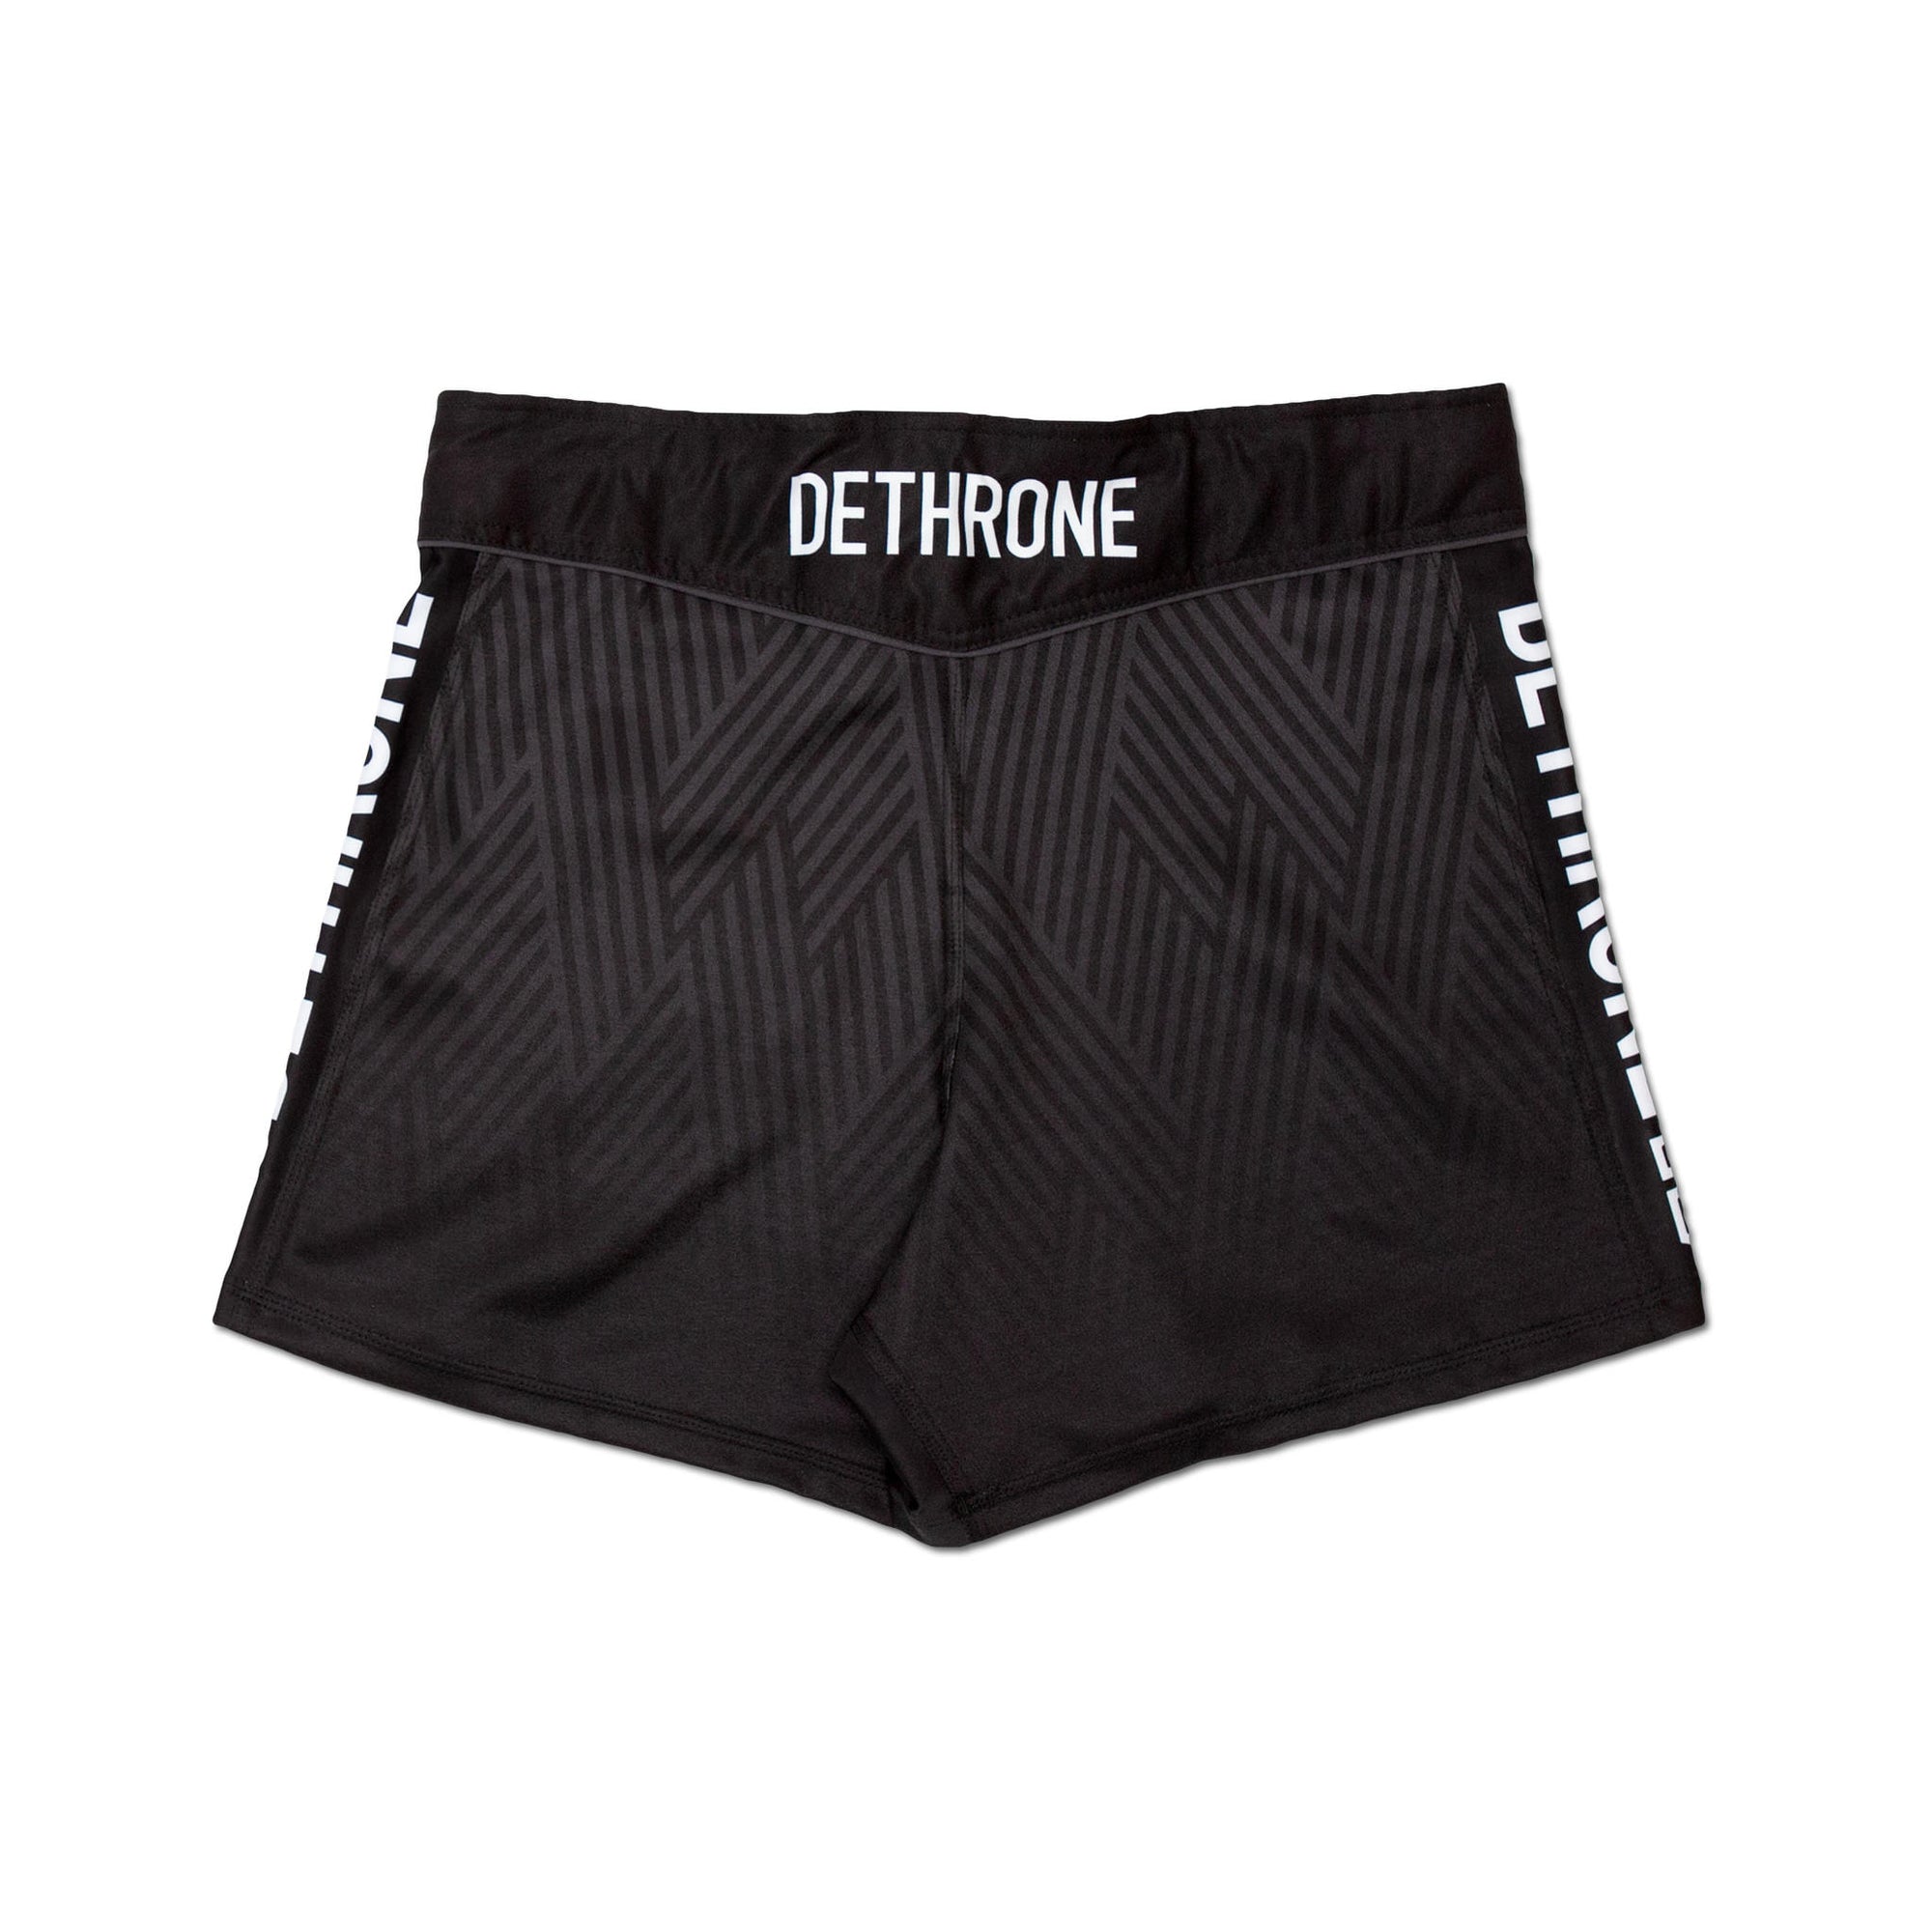 DETHRONE MMA FIGHT SHORTS 2.0 - Dethrone